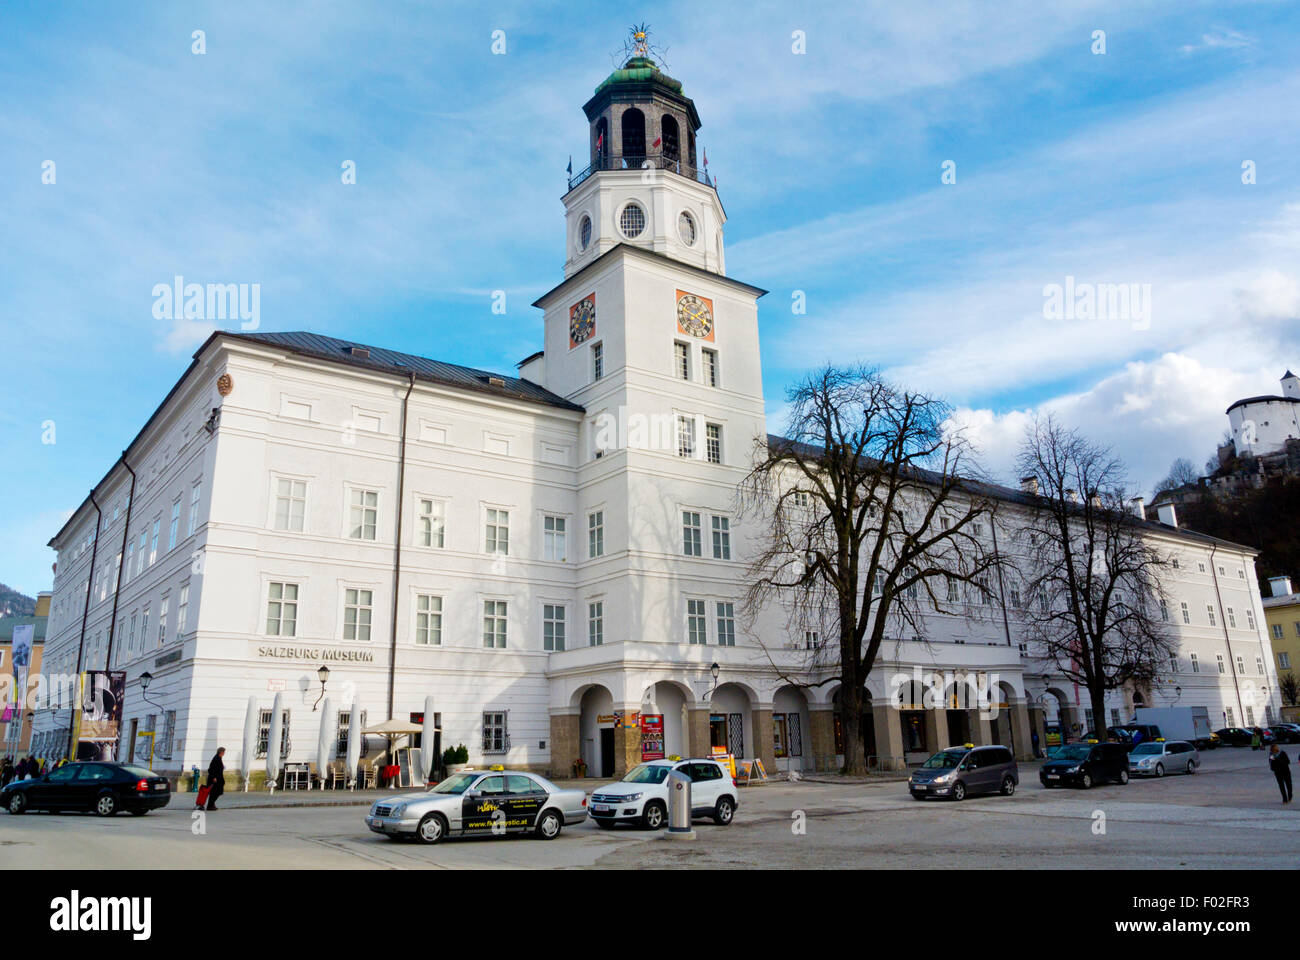 Neue Residenz, palacio museo de la ciudad de viviendas, con el Salzburger Glockenspiel, la torre del reloj, el Altstadt, el casco antiguo de Salzburgo, Austria Foto de stock